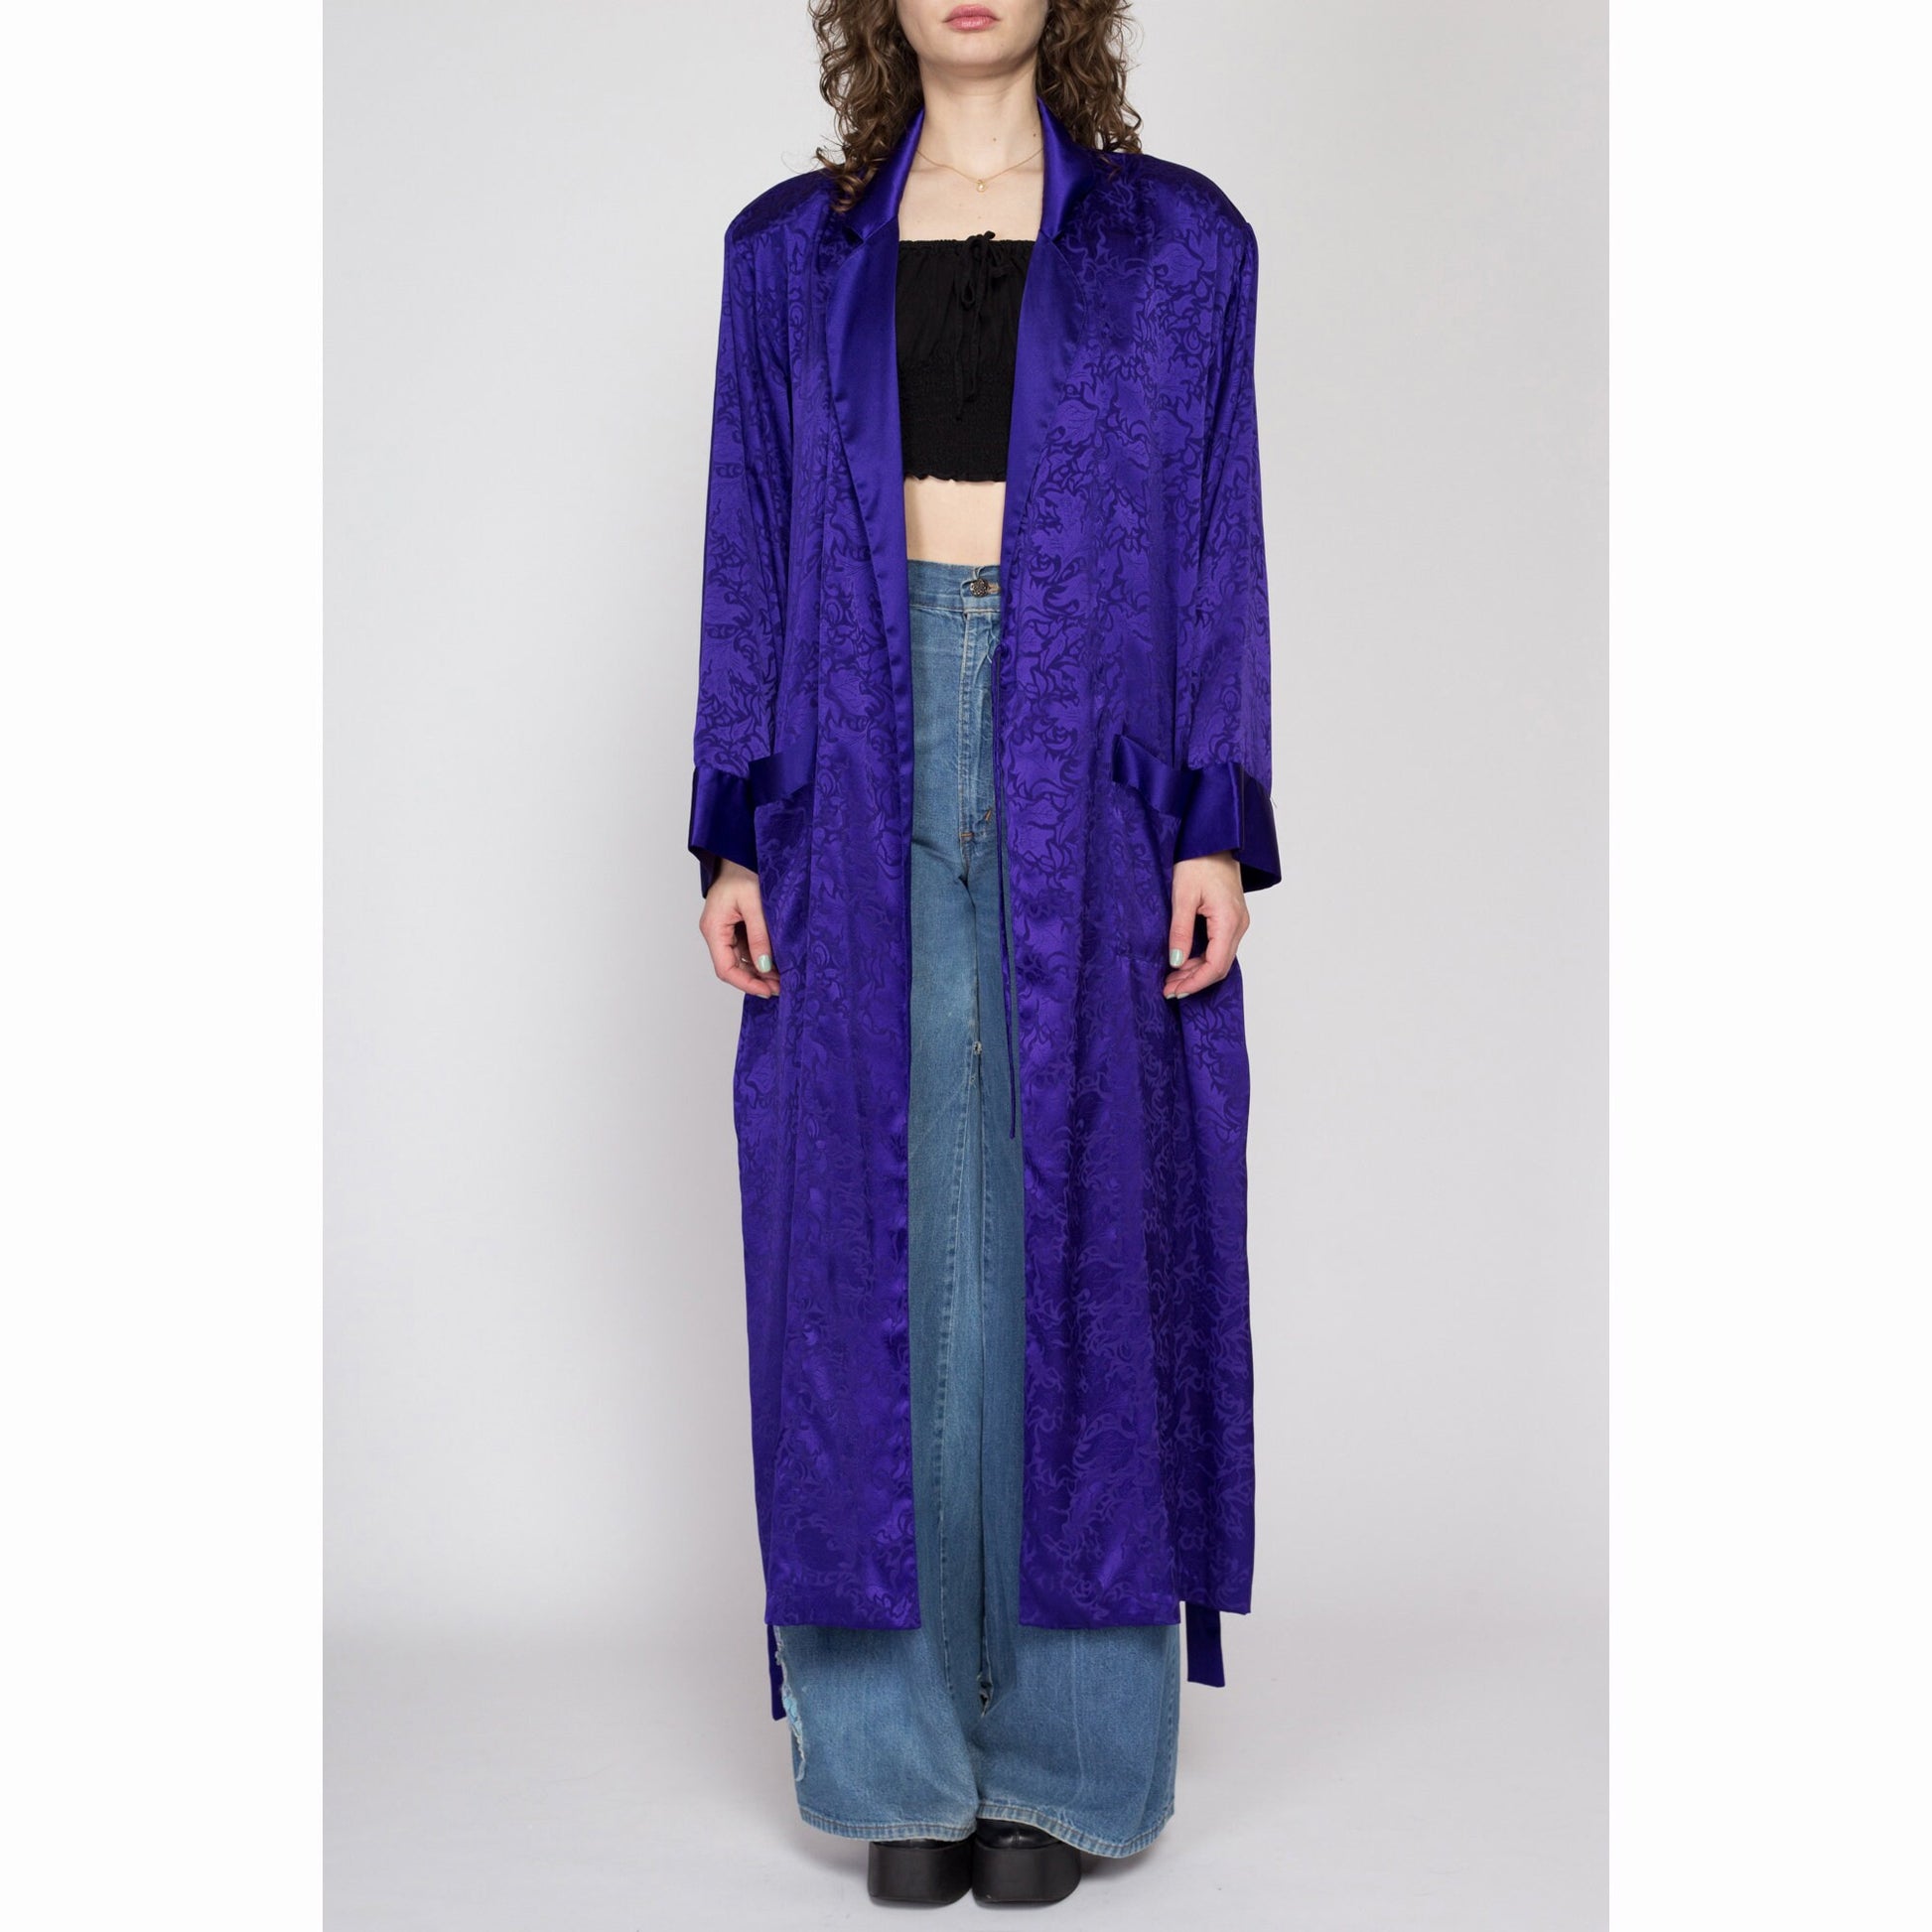 Large 90s Victoria's Secret Royal Purple Jacquard Satin Robe